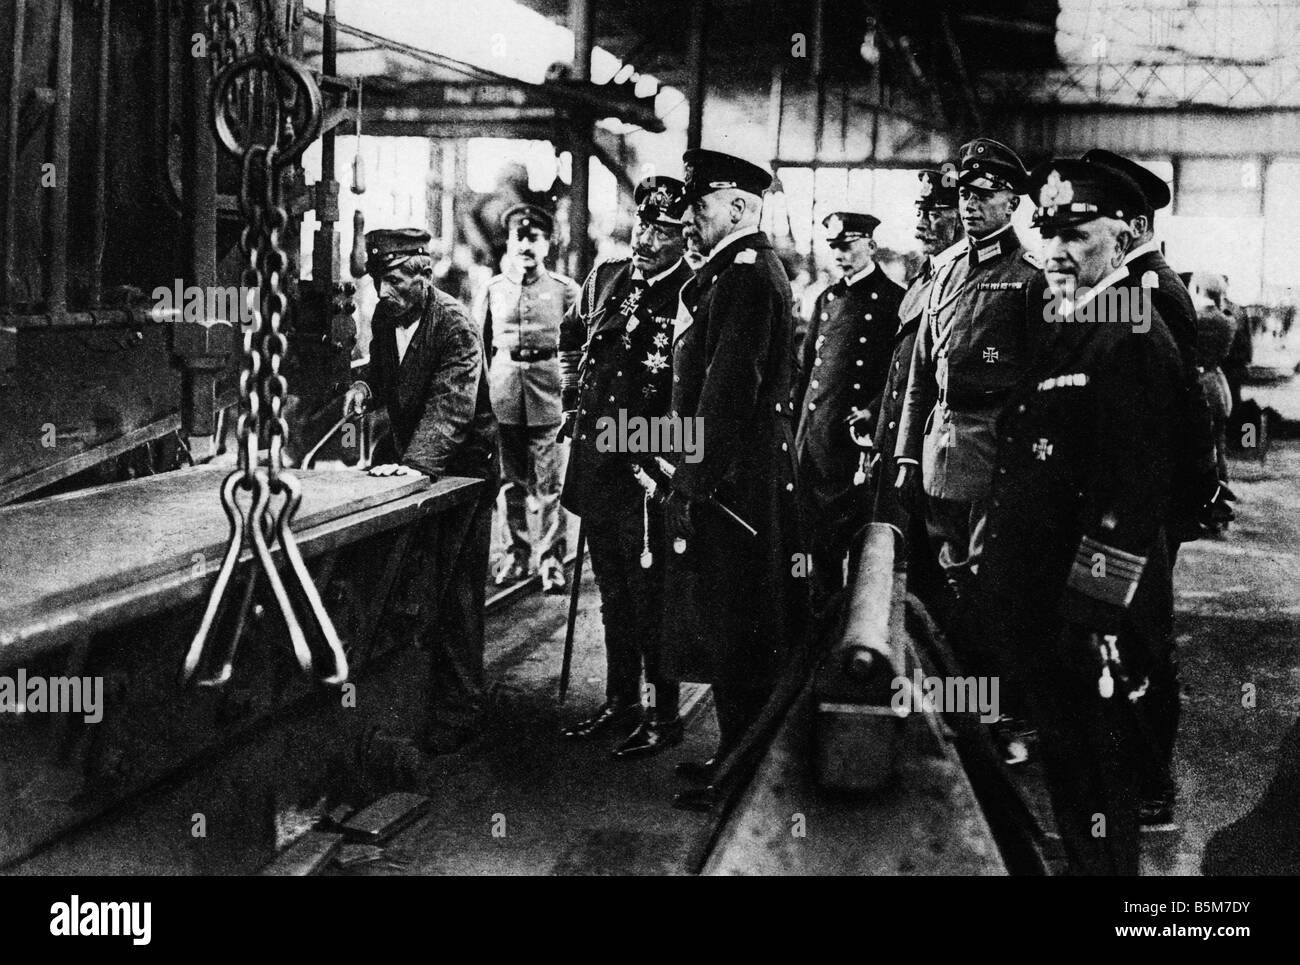 1 W46 F1915 3 B E Wilhelm II visits shipyard in Kiel Photo Wilhelm II German Kaiser 1859 1941 Visit to Kiel of his majesty the K Stock Photo